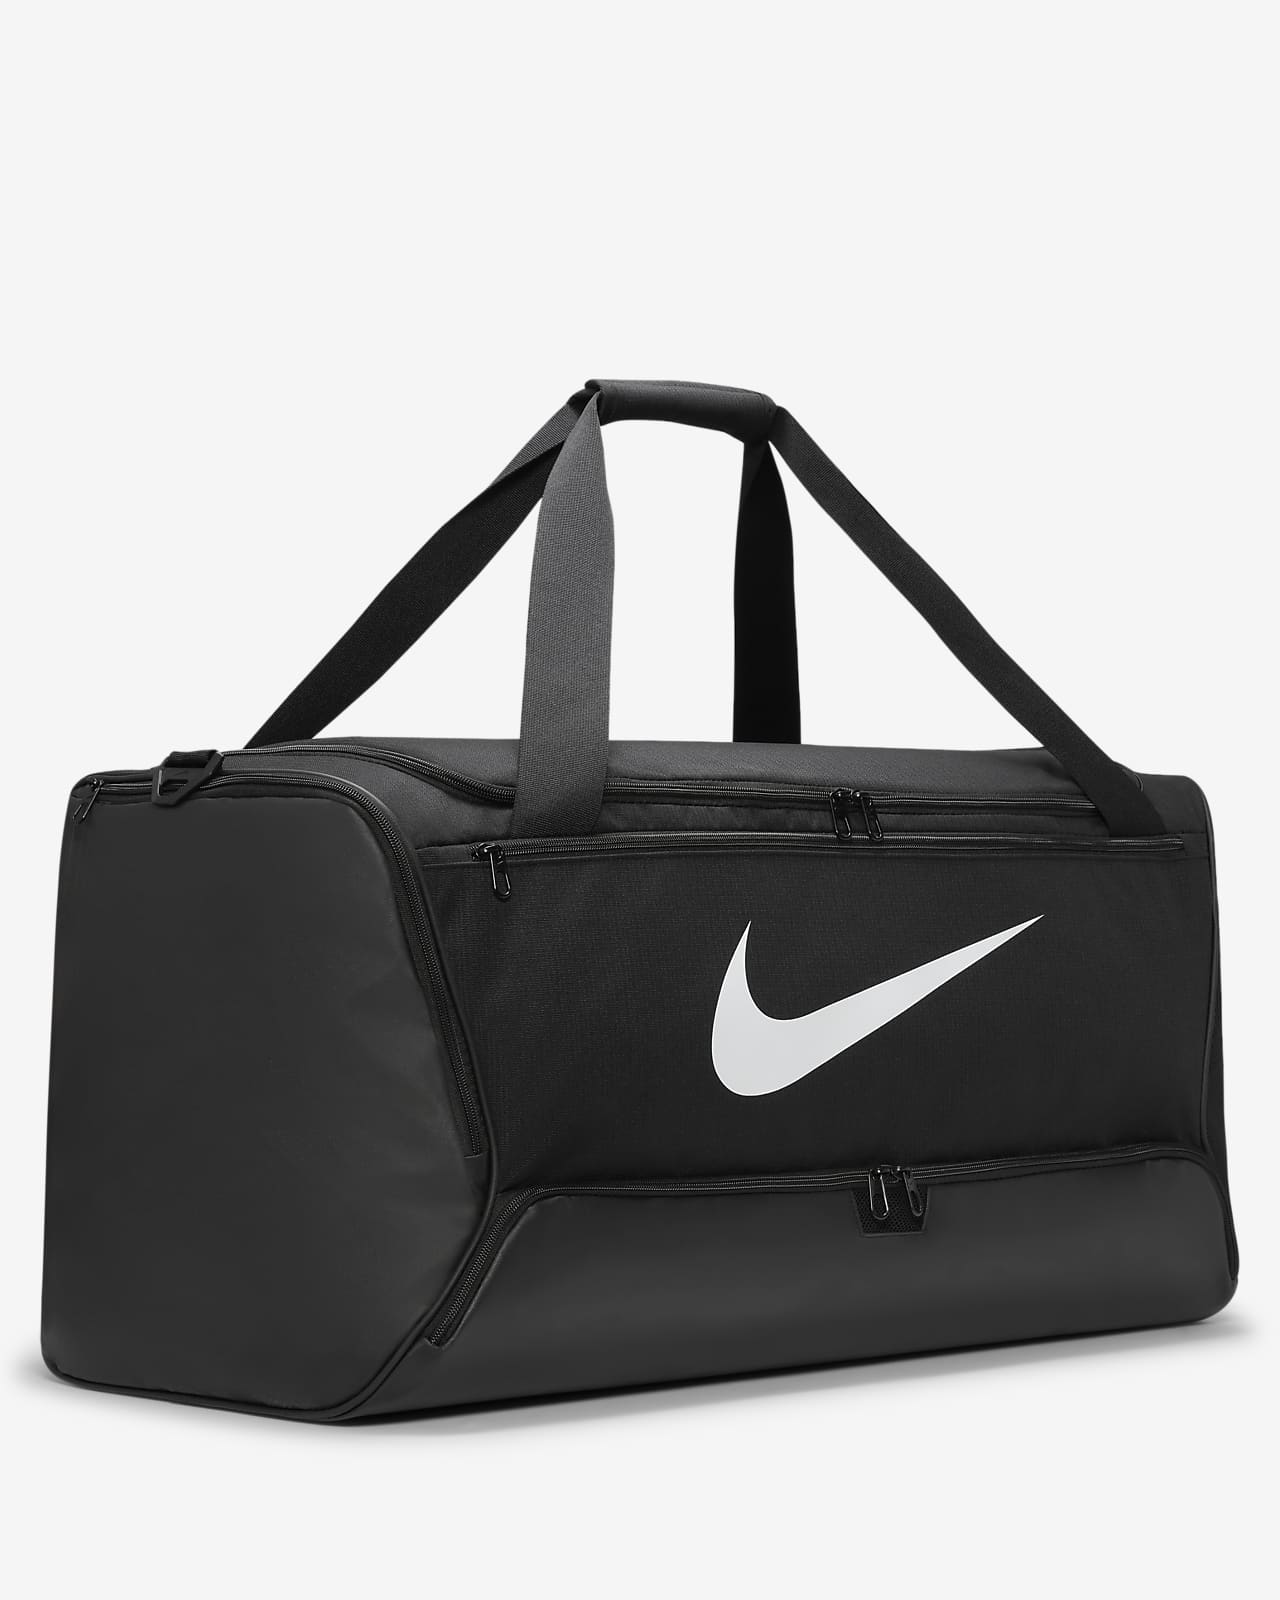 Grand sac d'entraînement homme Nike Brasilia 95 L - Noir (DO9193-010)